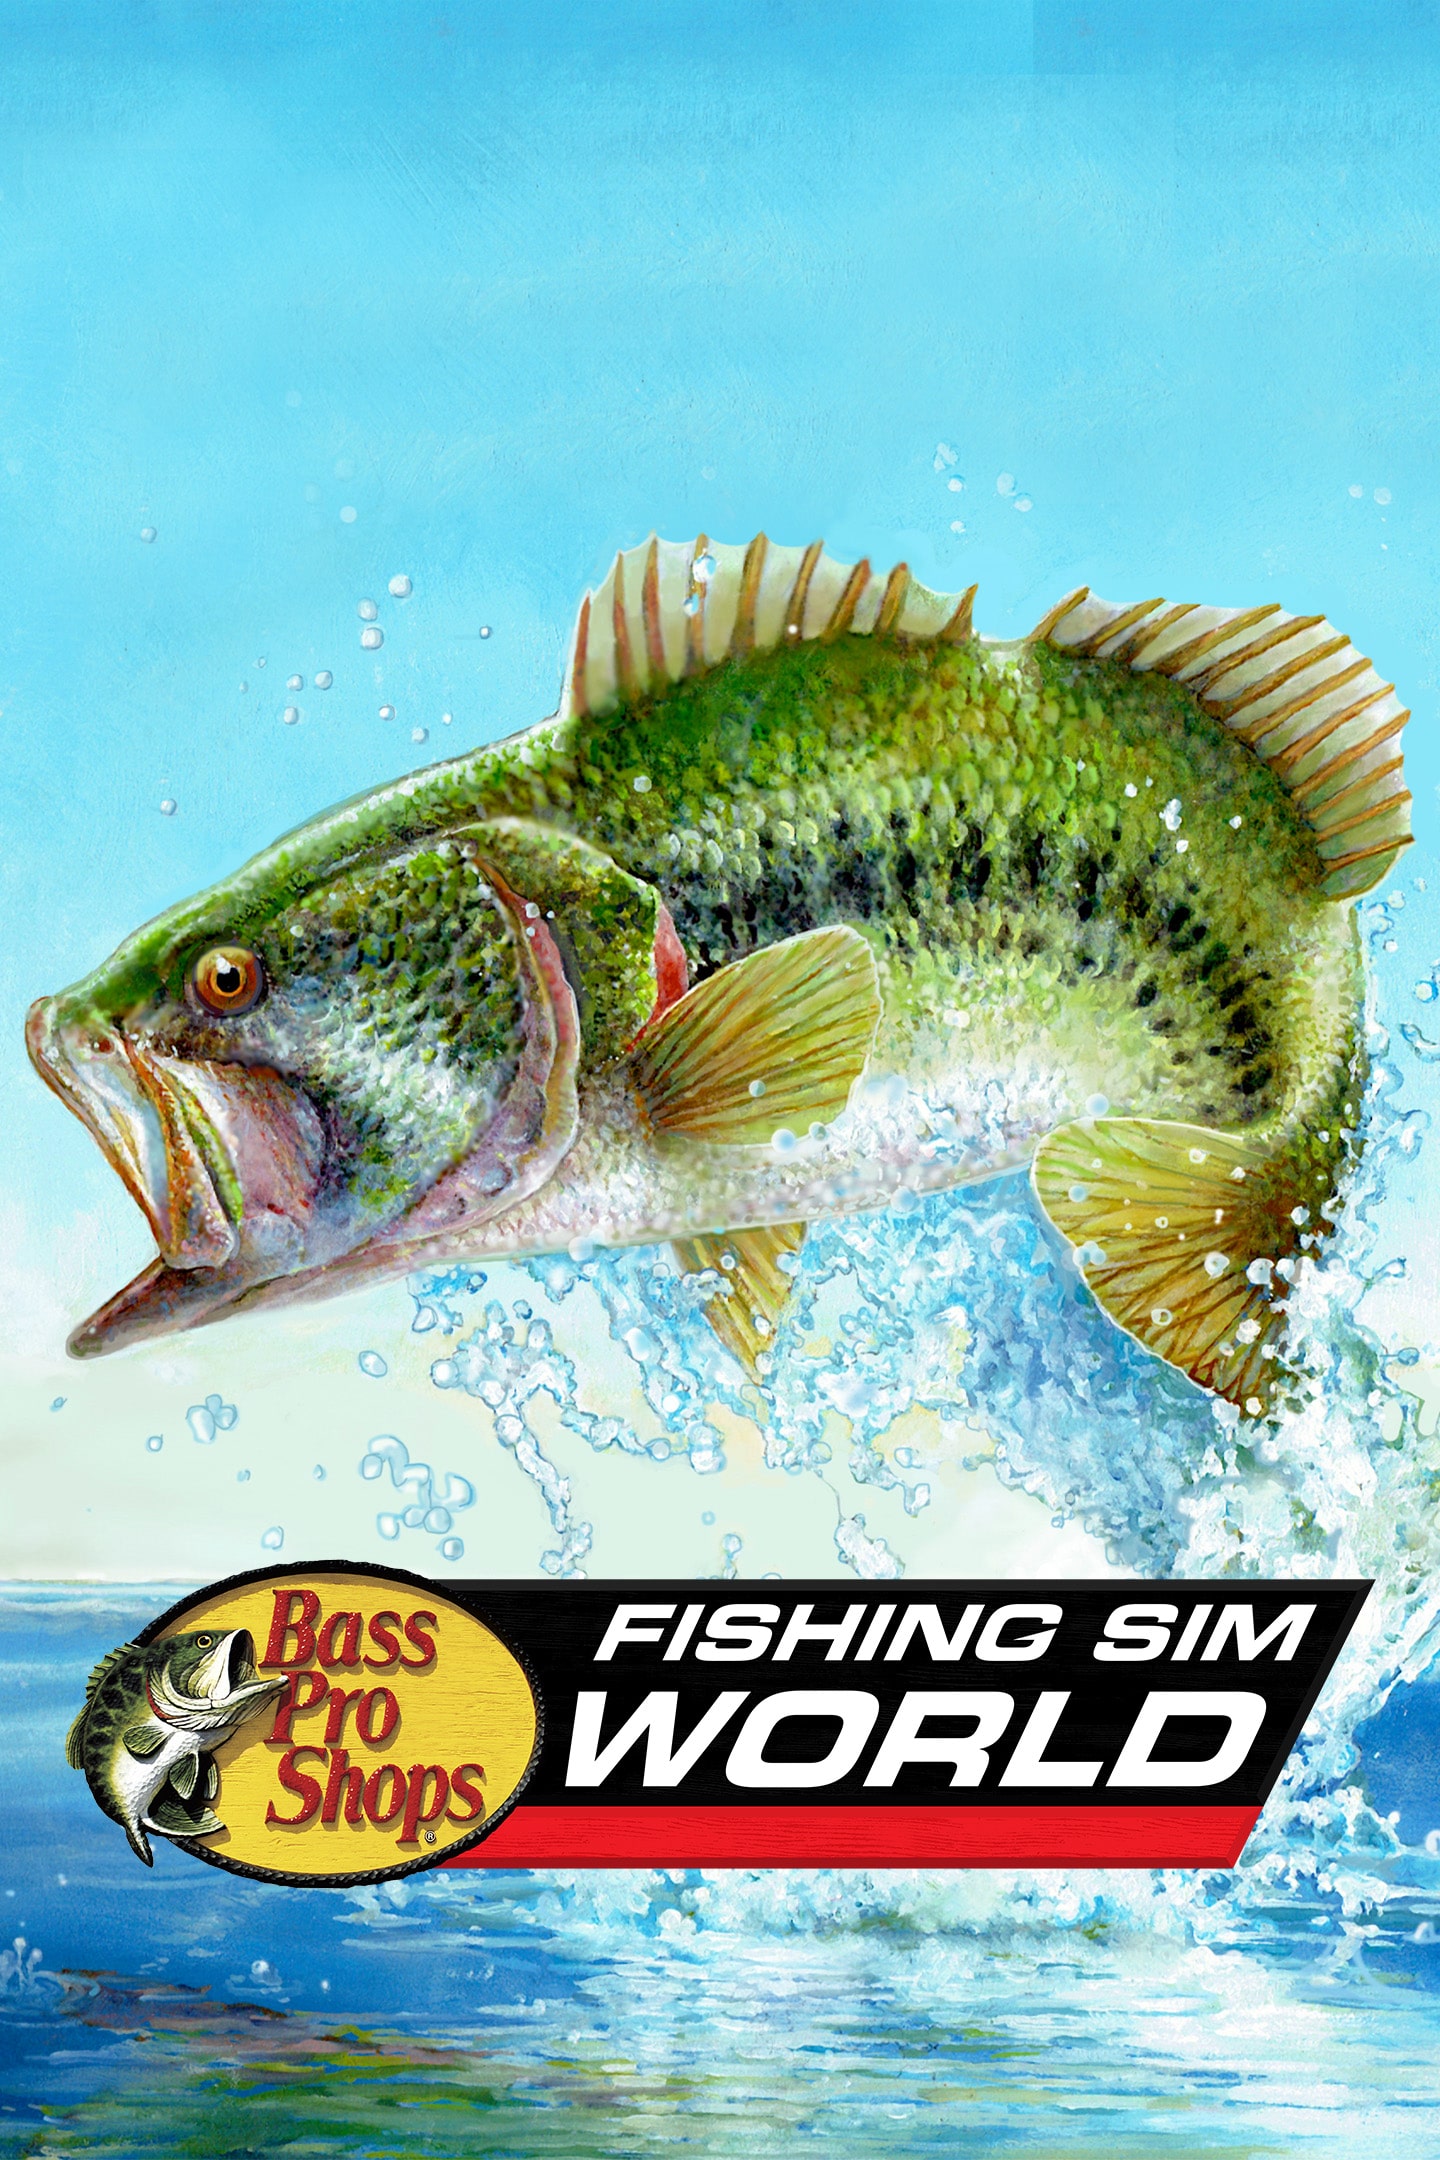 Bass Pro Shops Fishing Sim World - PlayStation 4